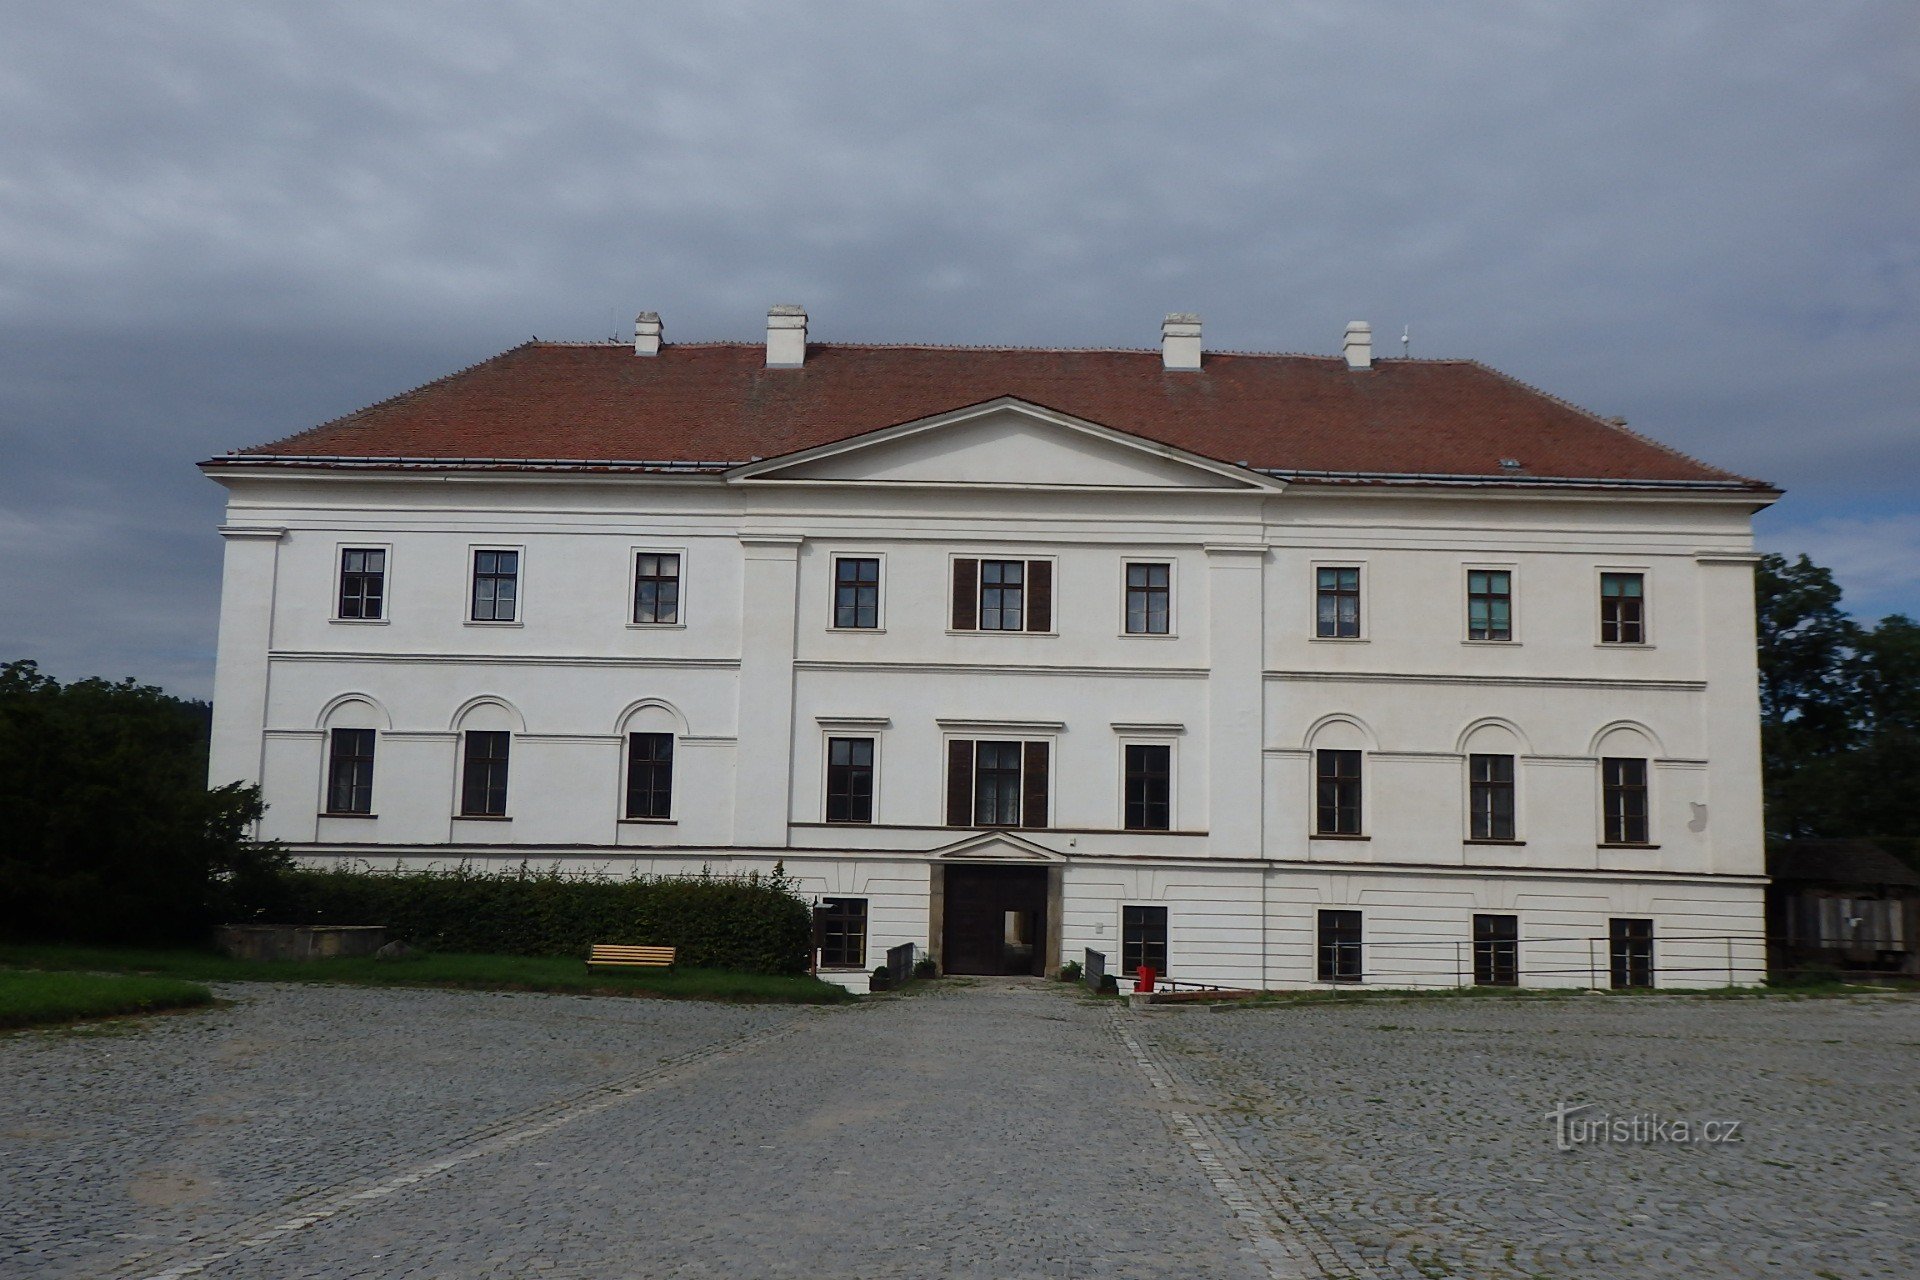 castelo em Rosice perto de Brno